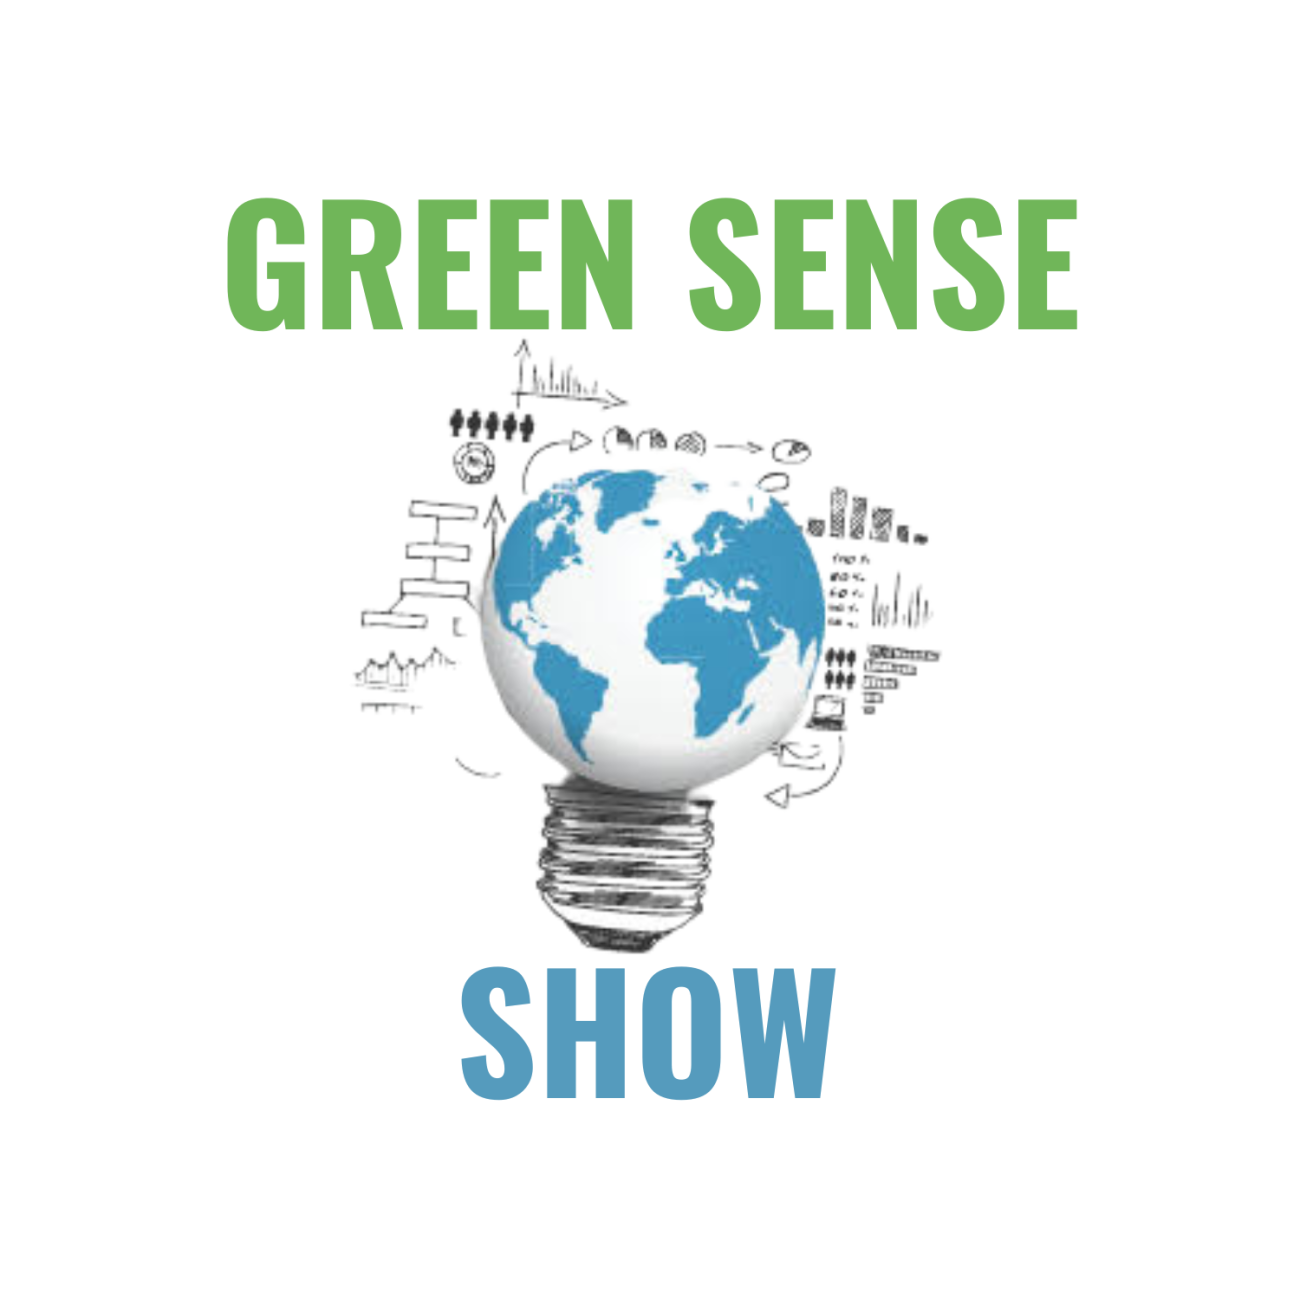 Green sense show logo